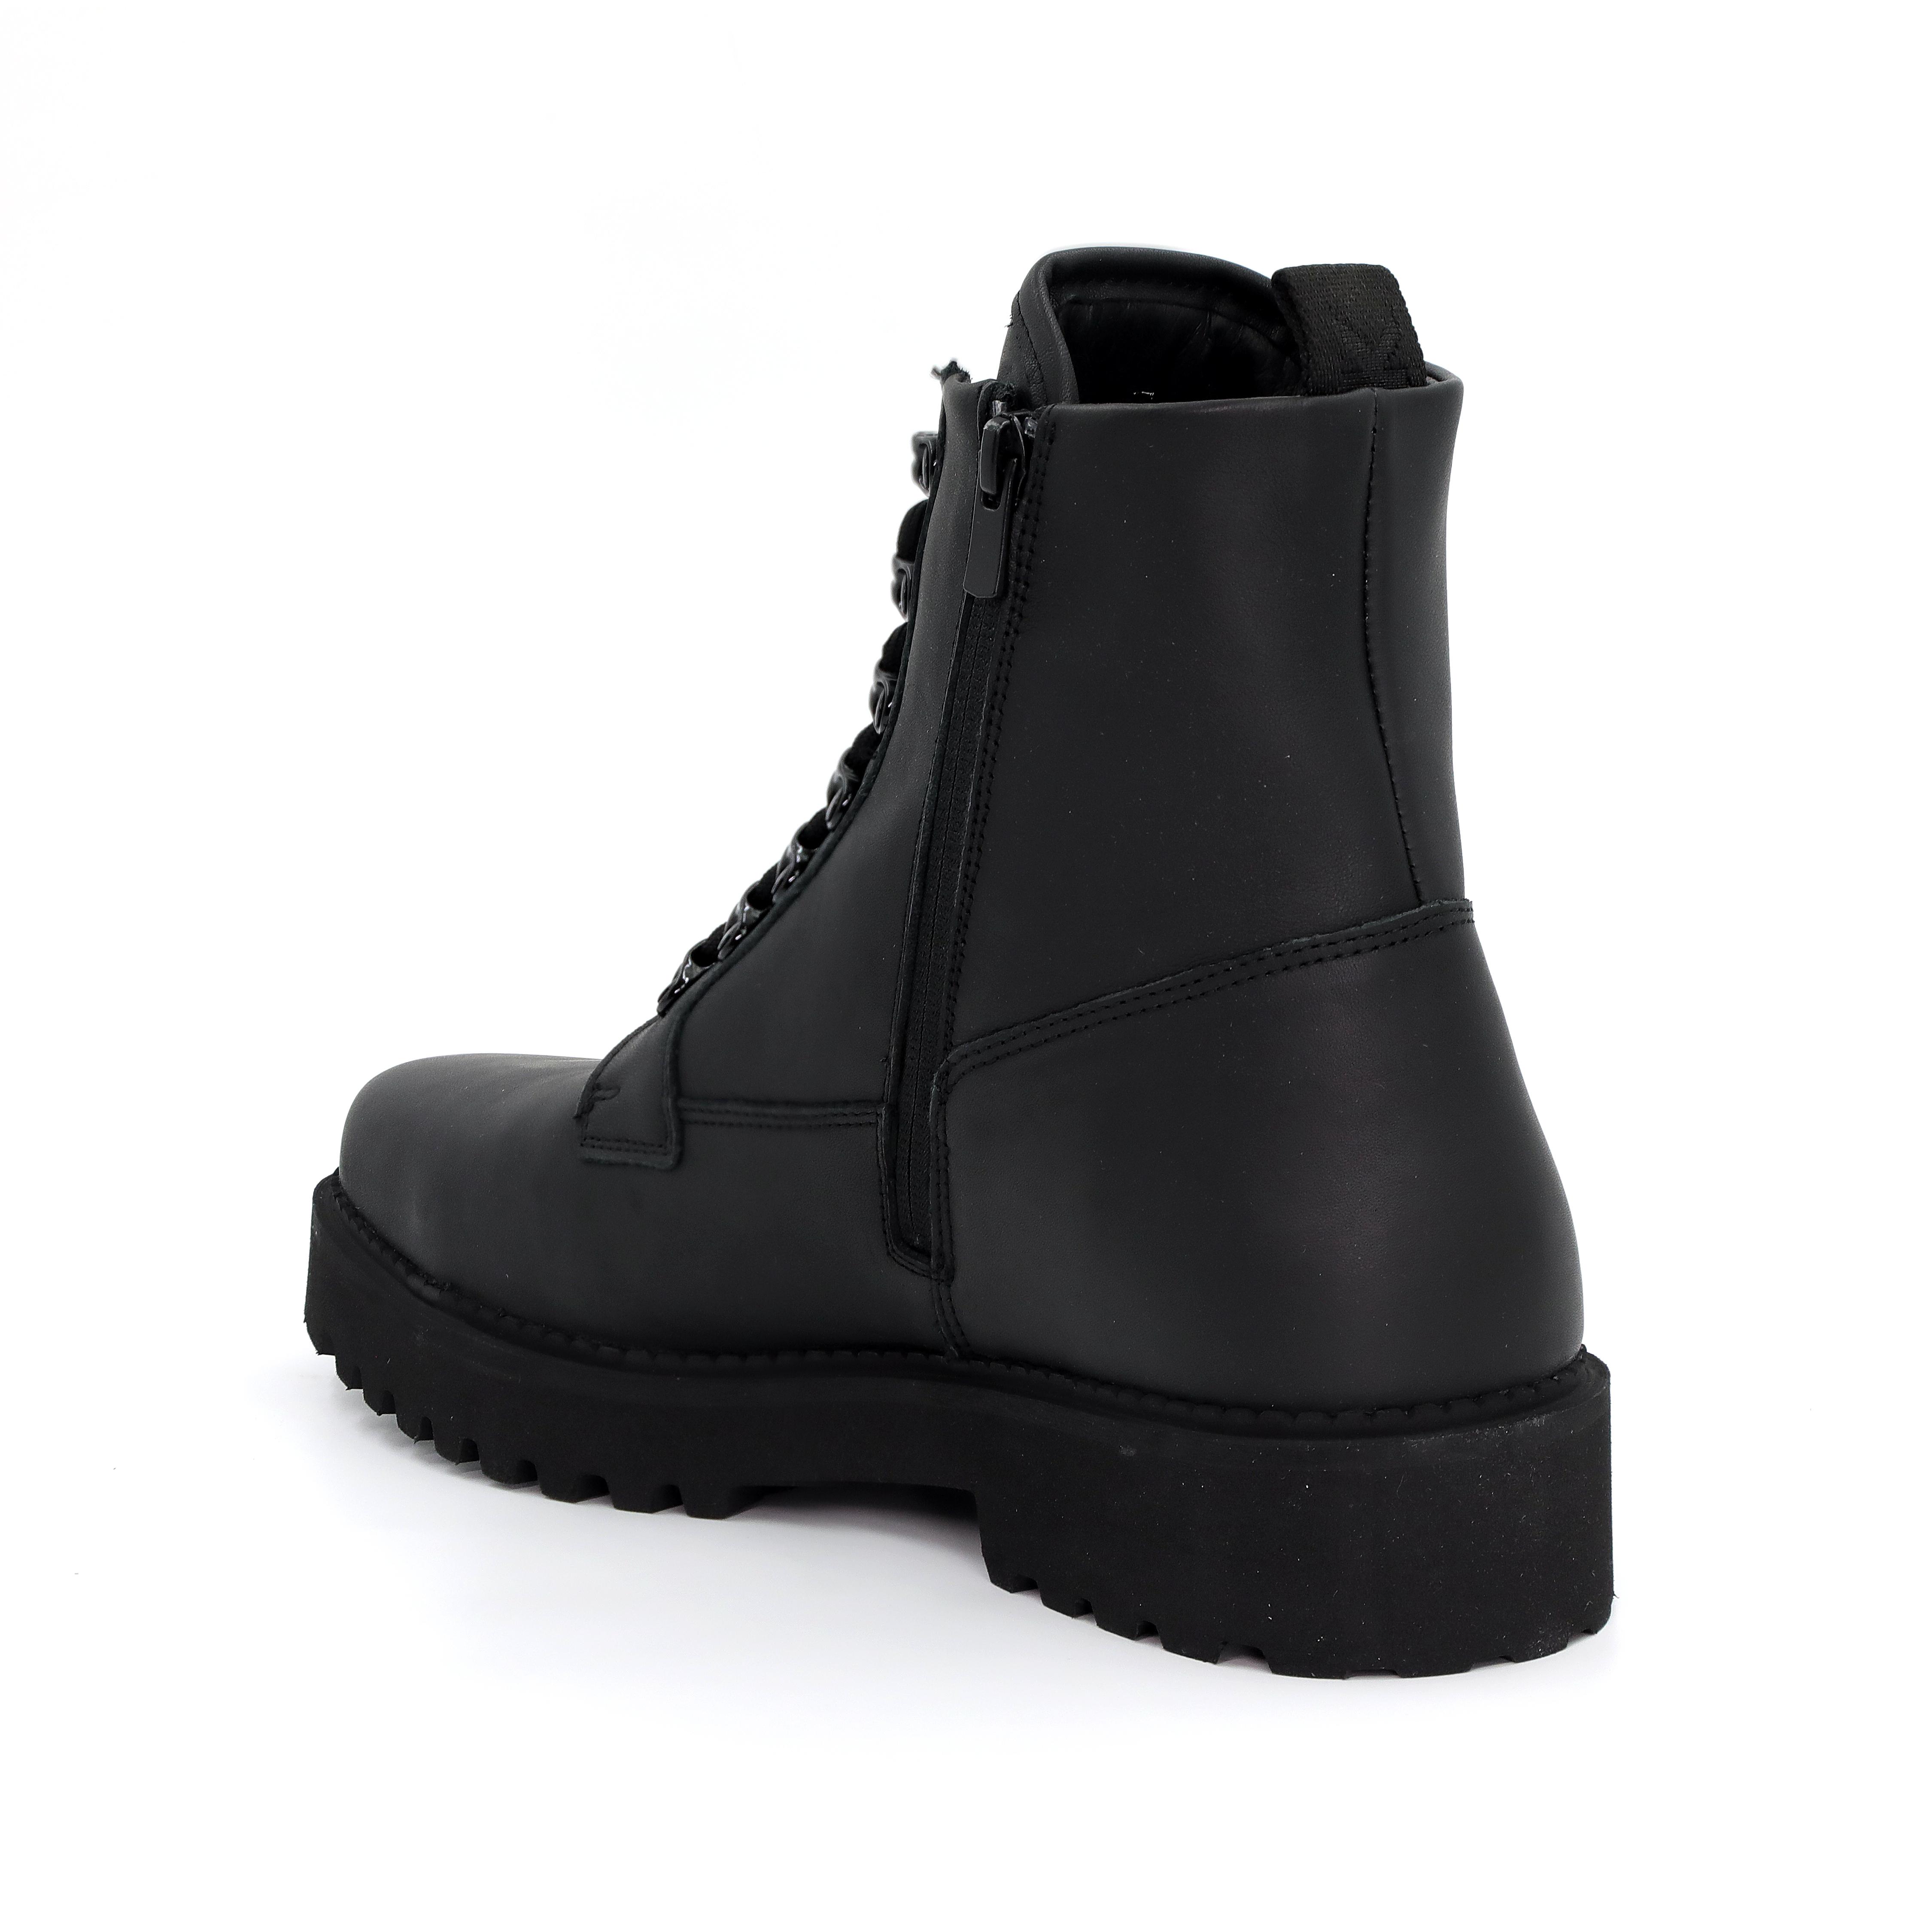 Мужские ботинки Nubikk, черные, цвет черный, размер 42 - фото 3